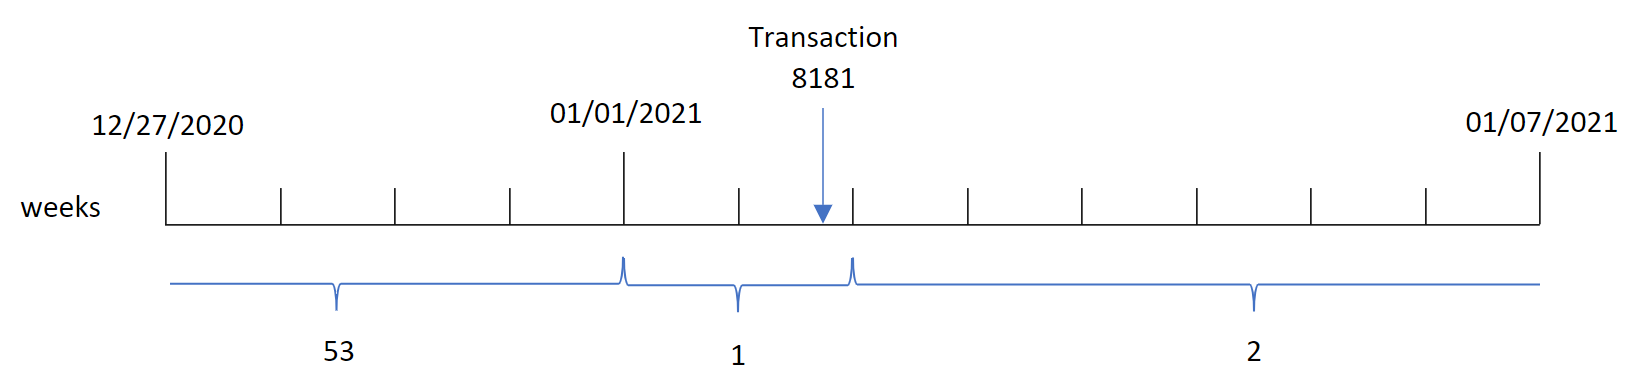 weekyear() fonksiyonunun 8181 numaralı işlemin 1. hafta gerçekleştiğini belirlediğini ve o haftanın yılını (2021) döndürdüğünü gösteren diyagram.